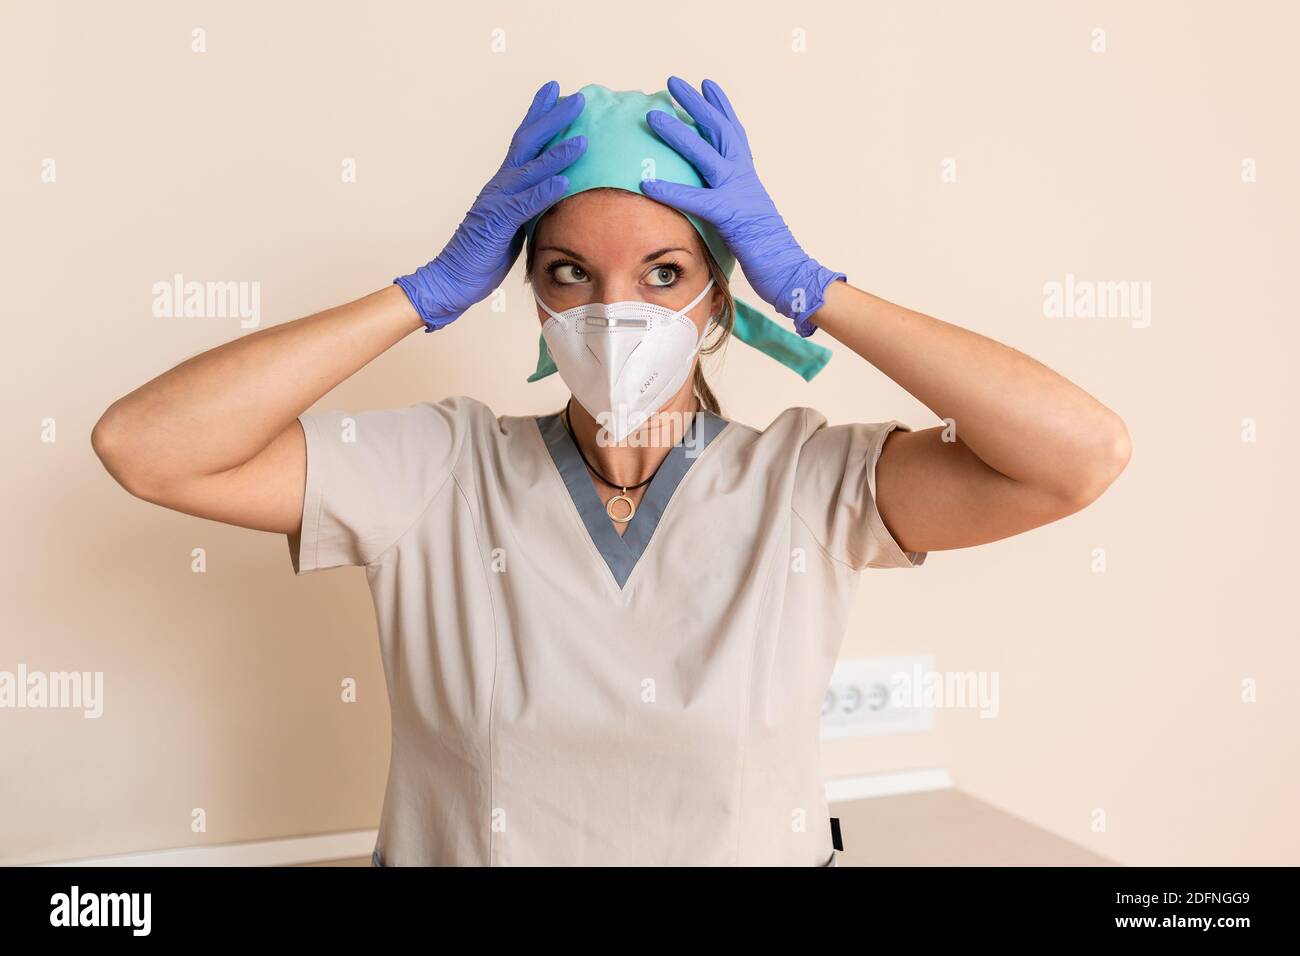 La ragazza dell'operatrice sanitaria è vestita con uniforme protettiva, cappuccio chirurgico, guanti in lattice e maschera Foto Stock